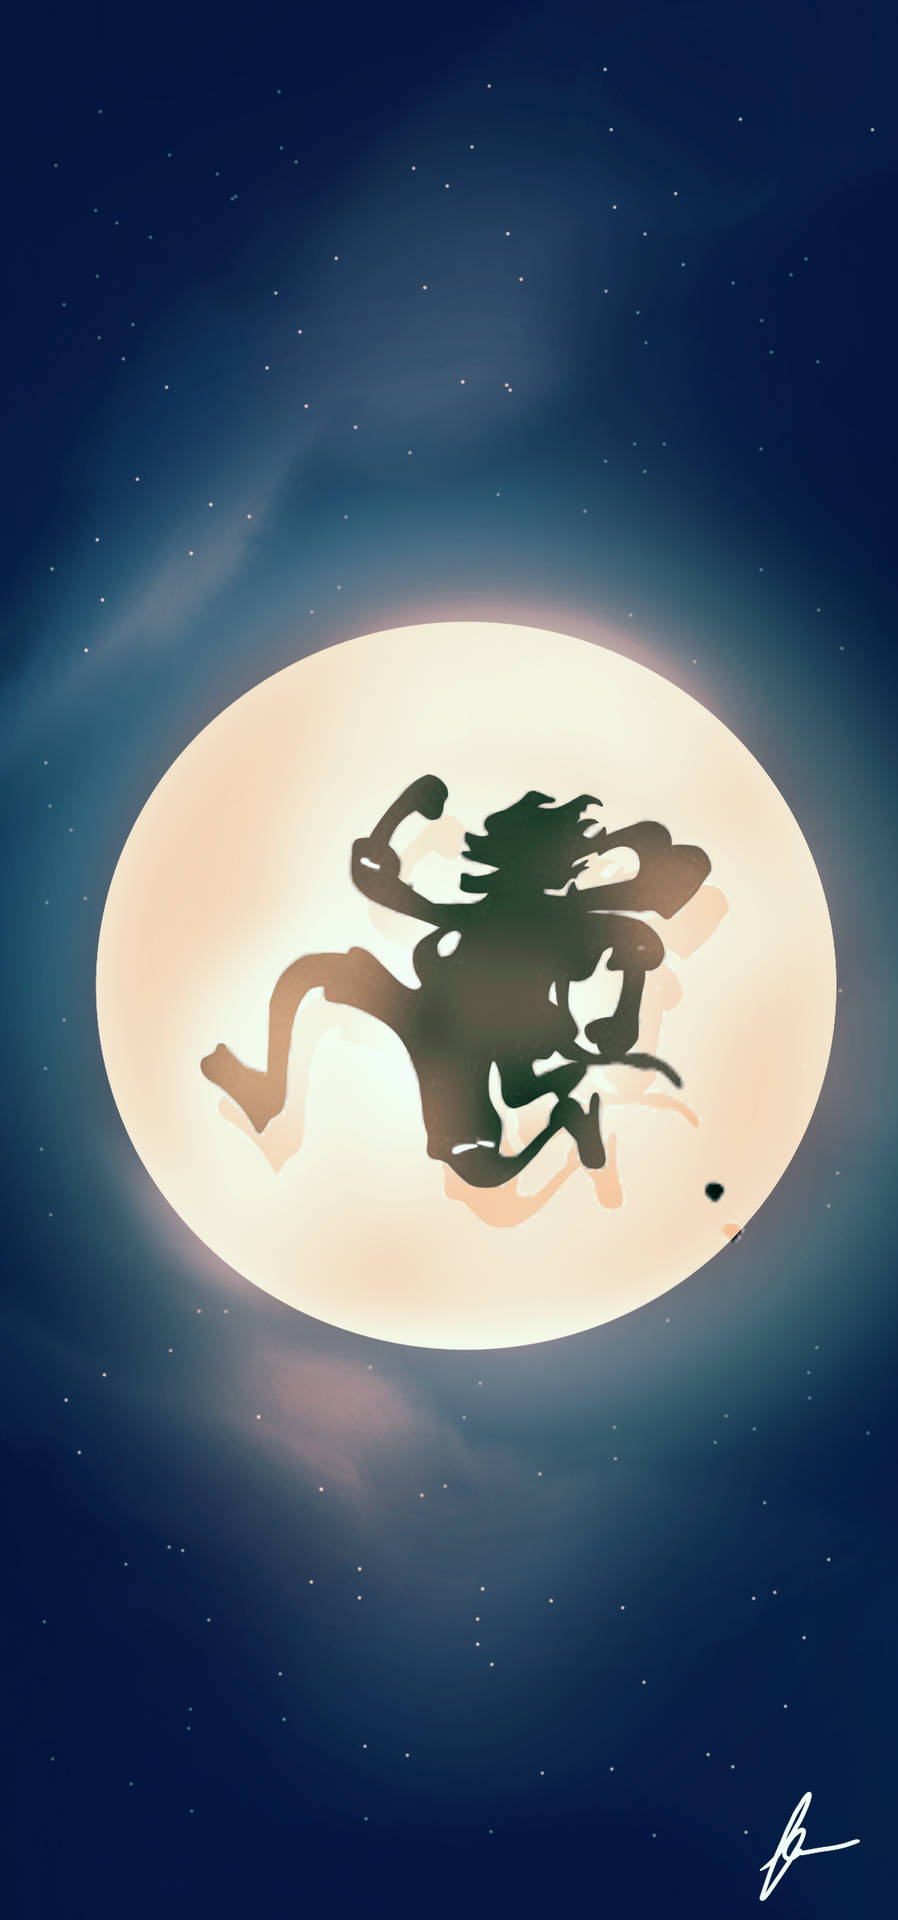 En silhouette af en mand på månen med en skyet nattehimmel Wallpaper